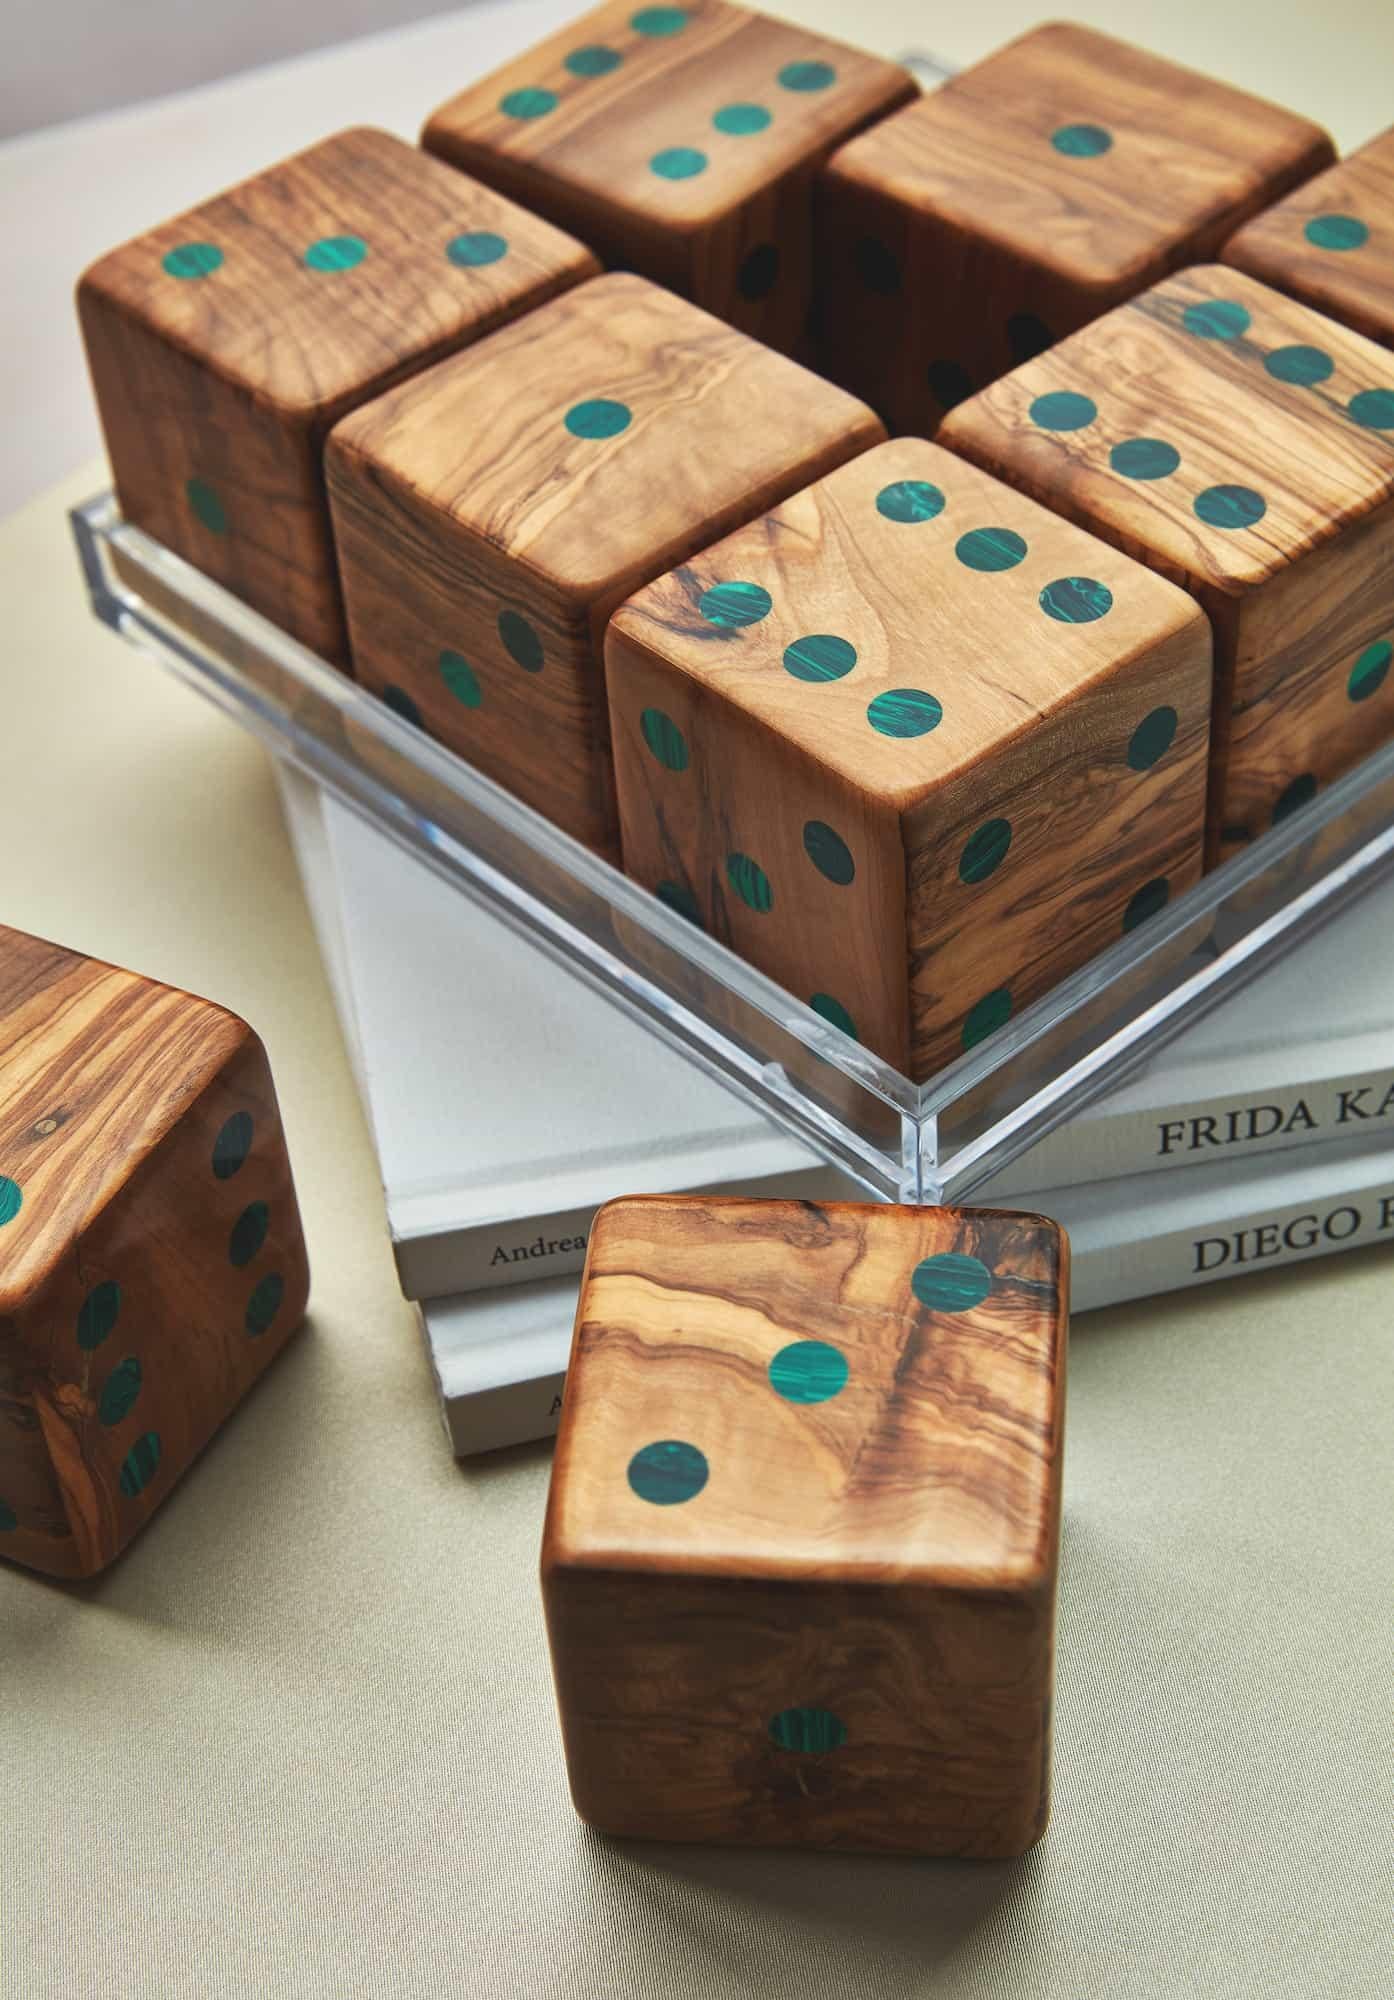 small dice dimensions